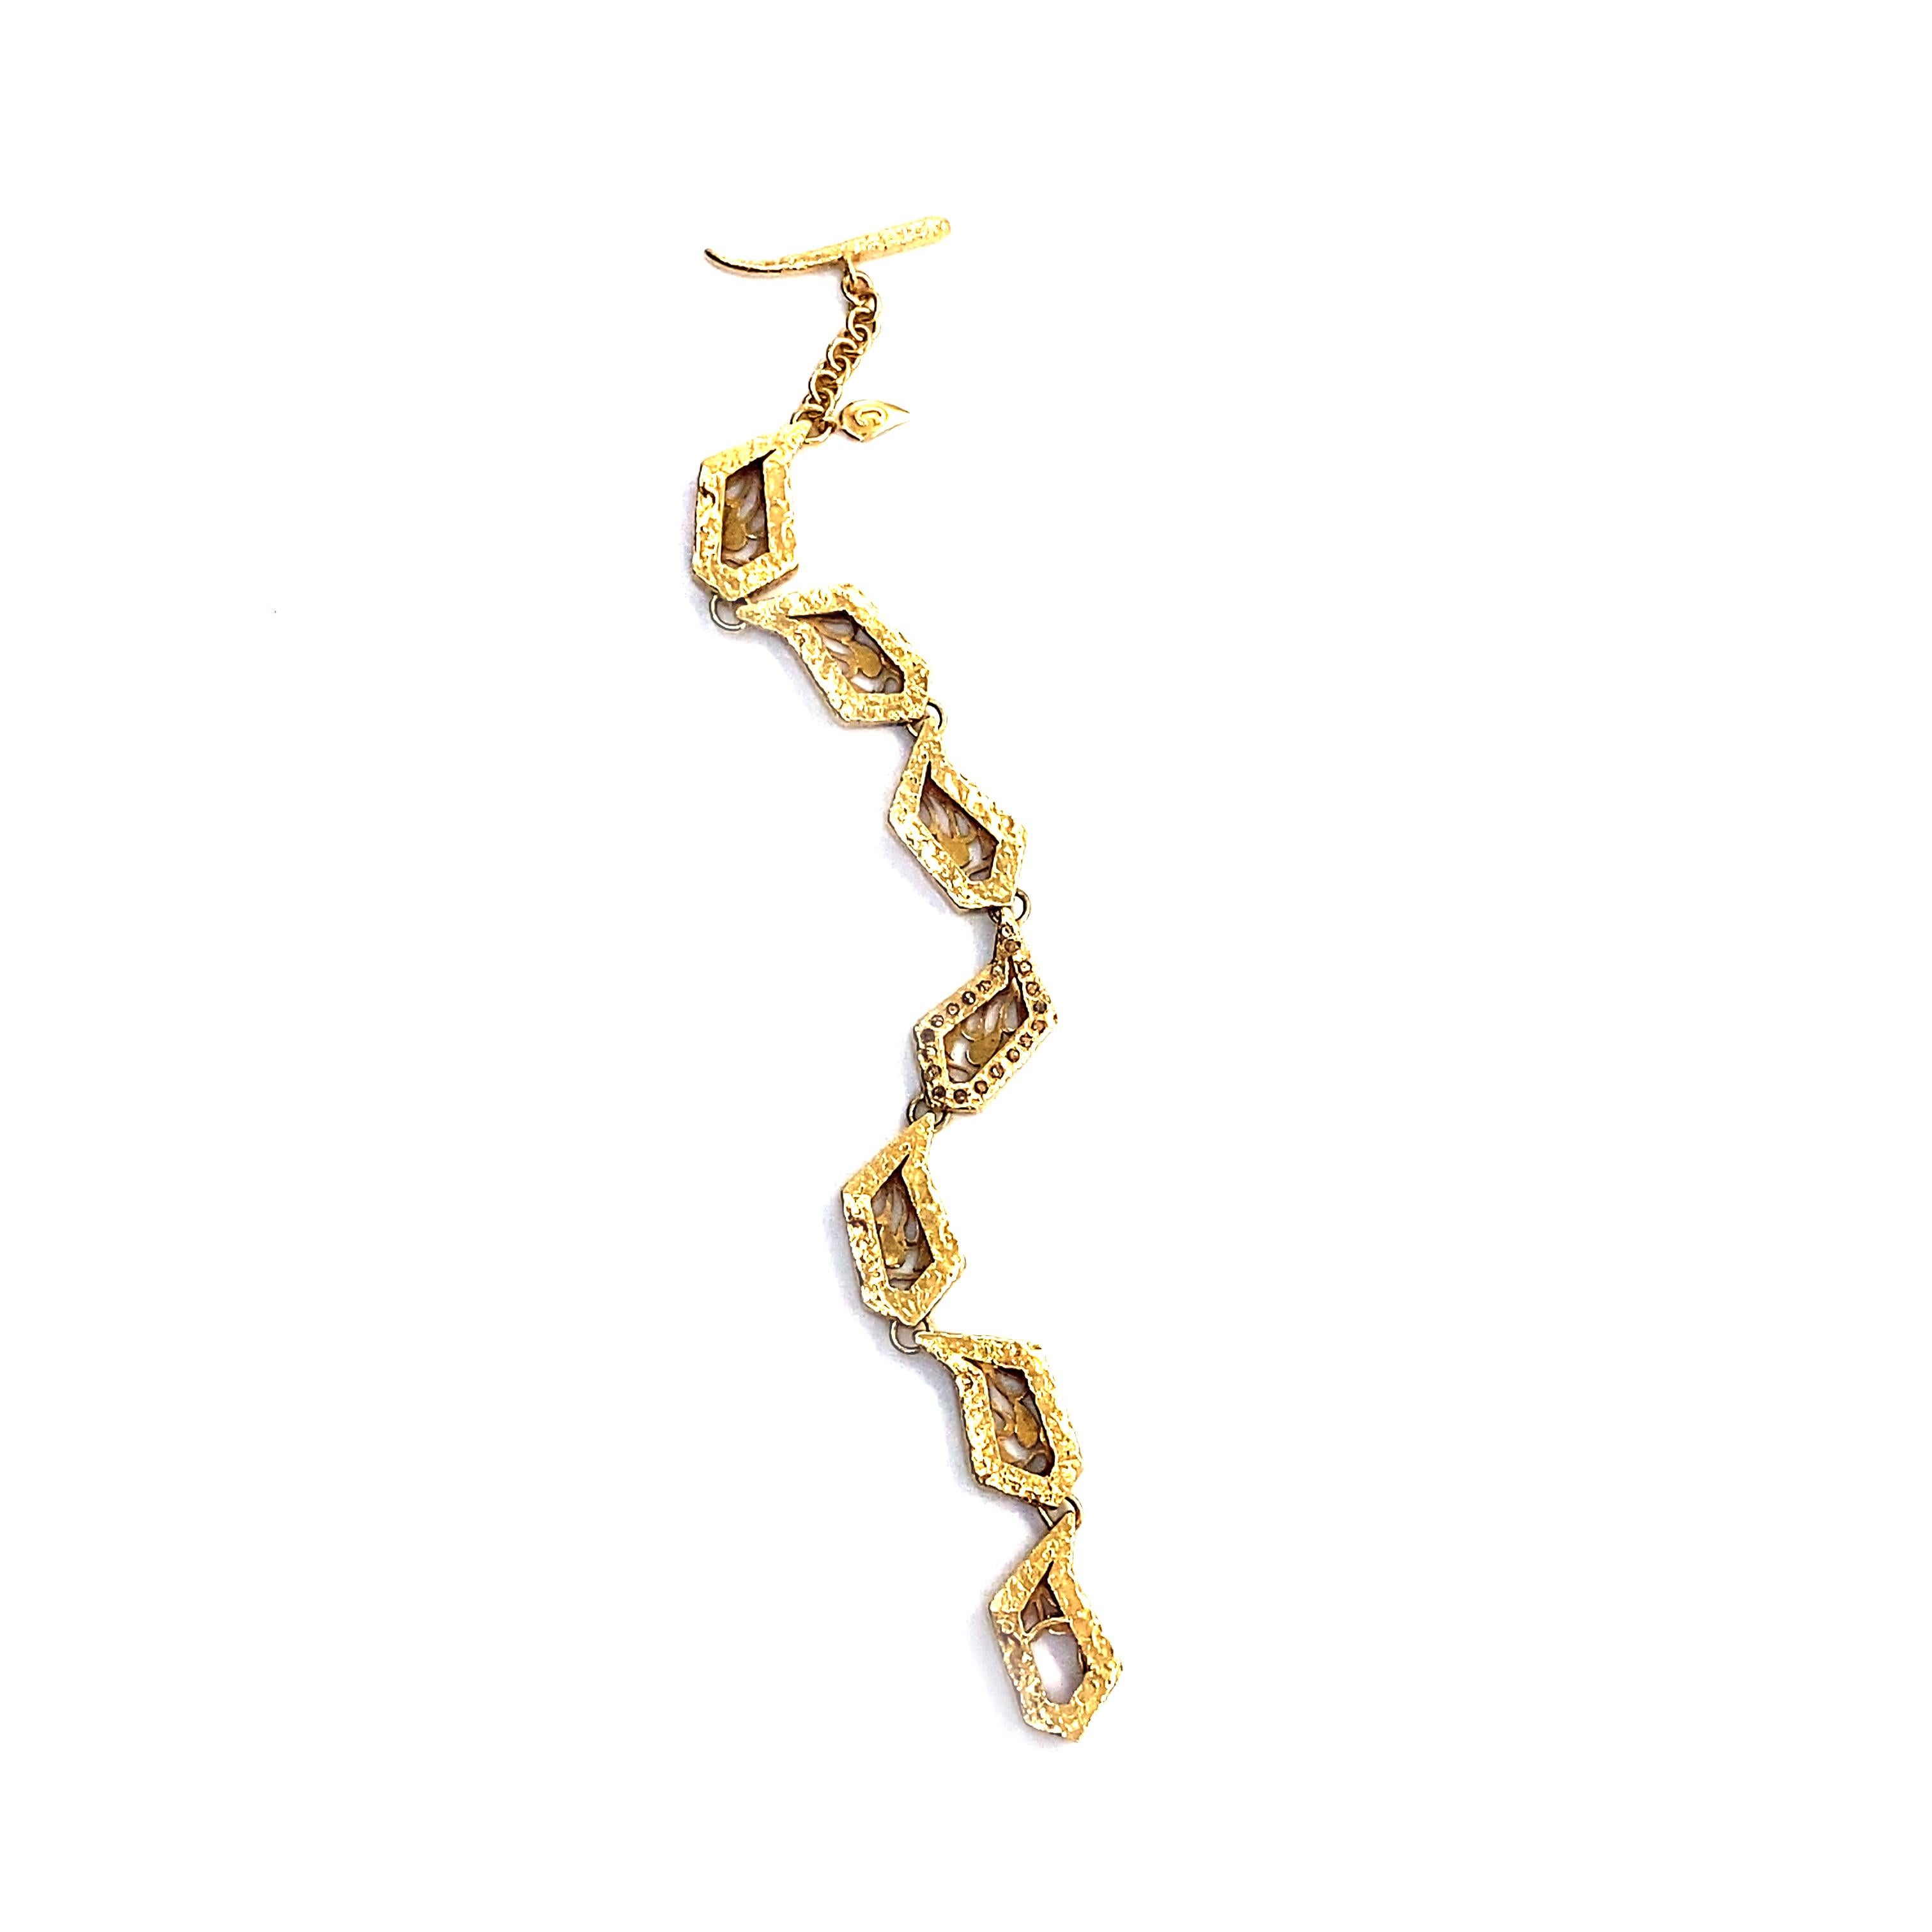 Parure de bracelet géométrique en or jaune 20 carats avec diamants taille rose 0,34 carat. Le bracelet est terminé par un fermoir à bascule fait à la main et une grille arrière détaillée. Le bracelet mesure 7 pouces de long.